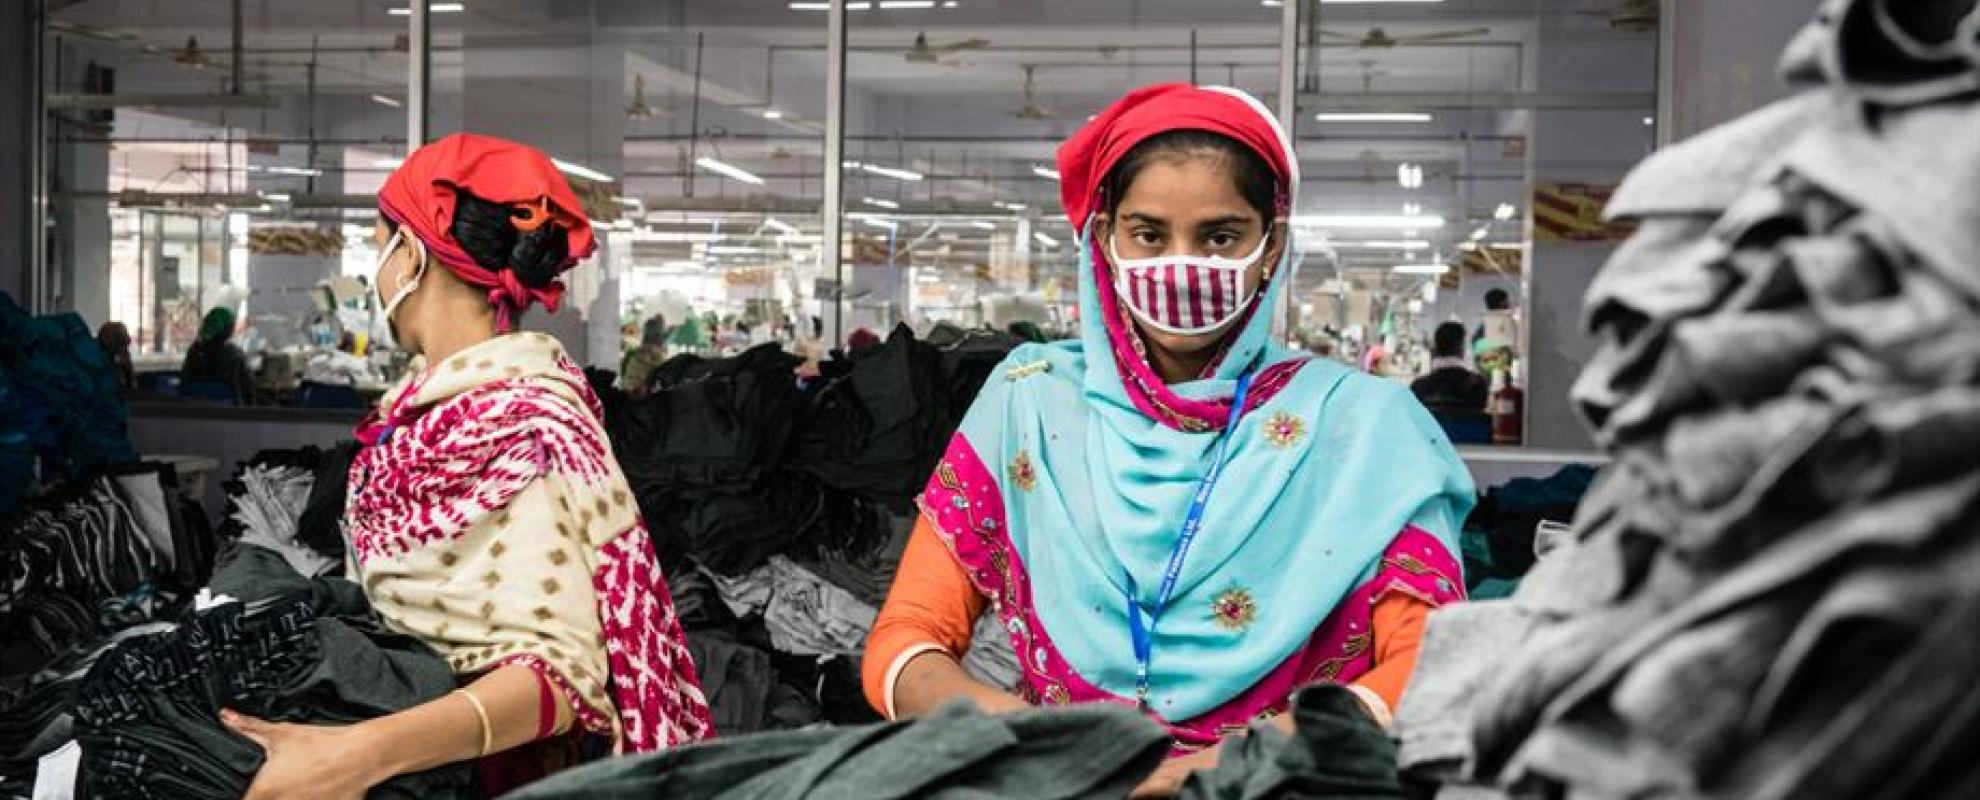 Arbeidsters in een textielfabriek